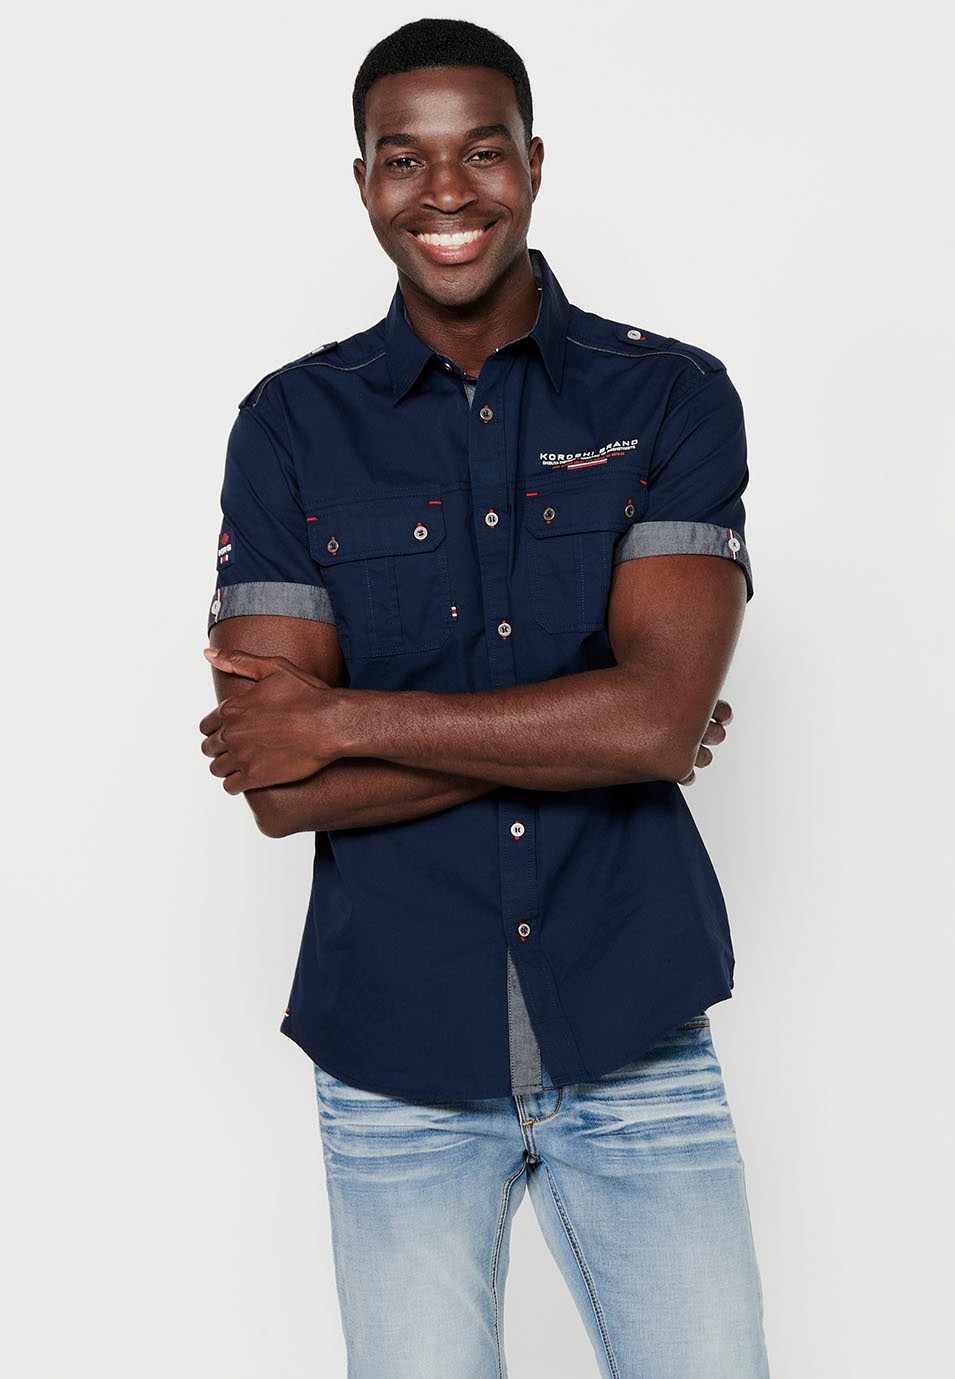 Cotton shirt, short sleeve, shoulder details, navy color for men 5